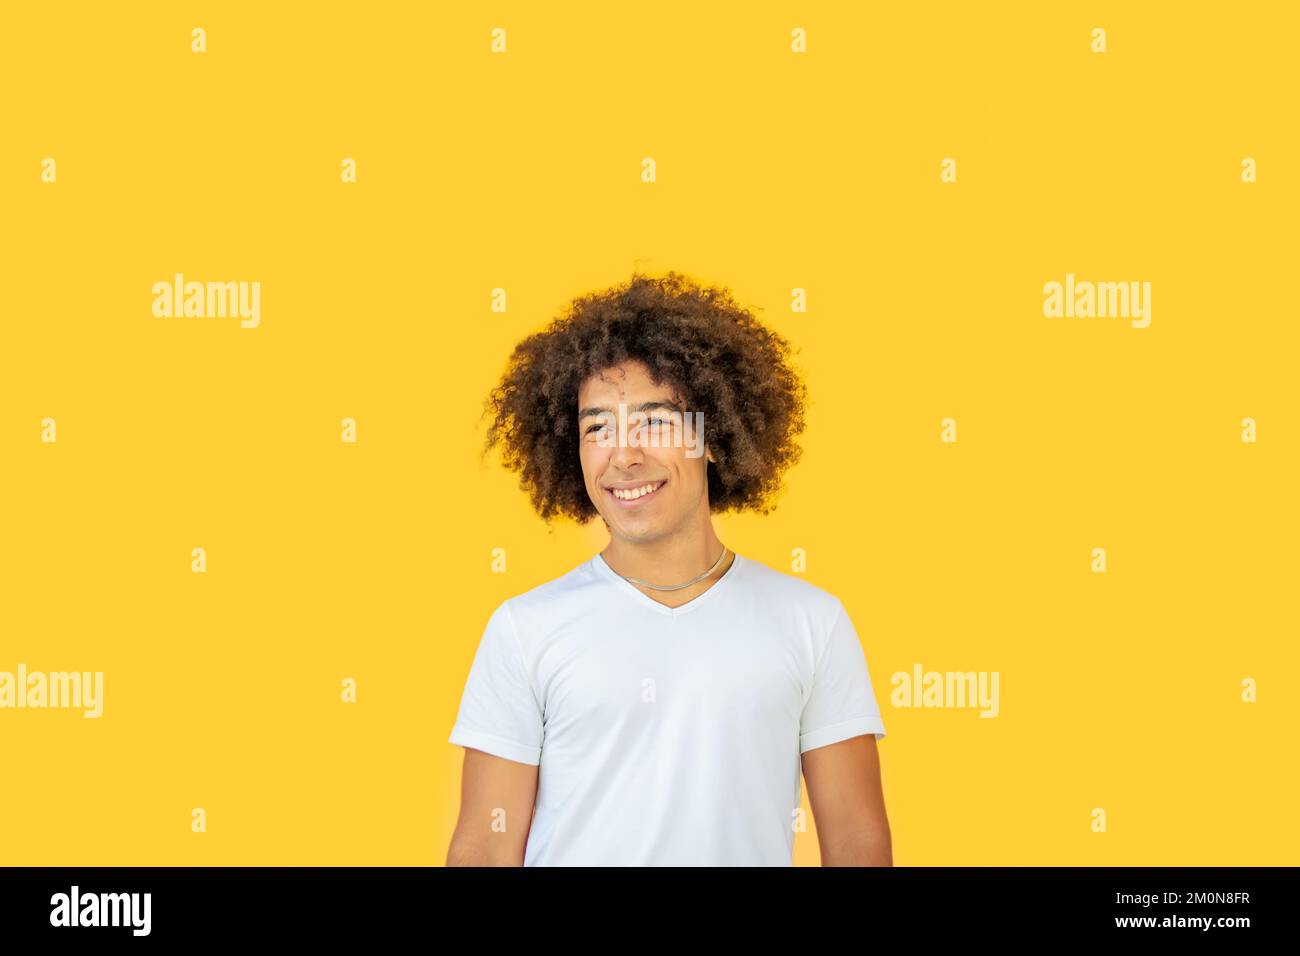 Porträt eines lächelnden jungen afro-italienischen Teenagers mit dickem lockigem Haar auf gelbem Hintergrund. Glückliche, multiethnische junge Männer. Absolut Stockfoto